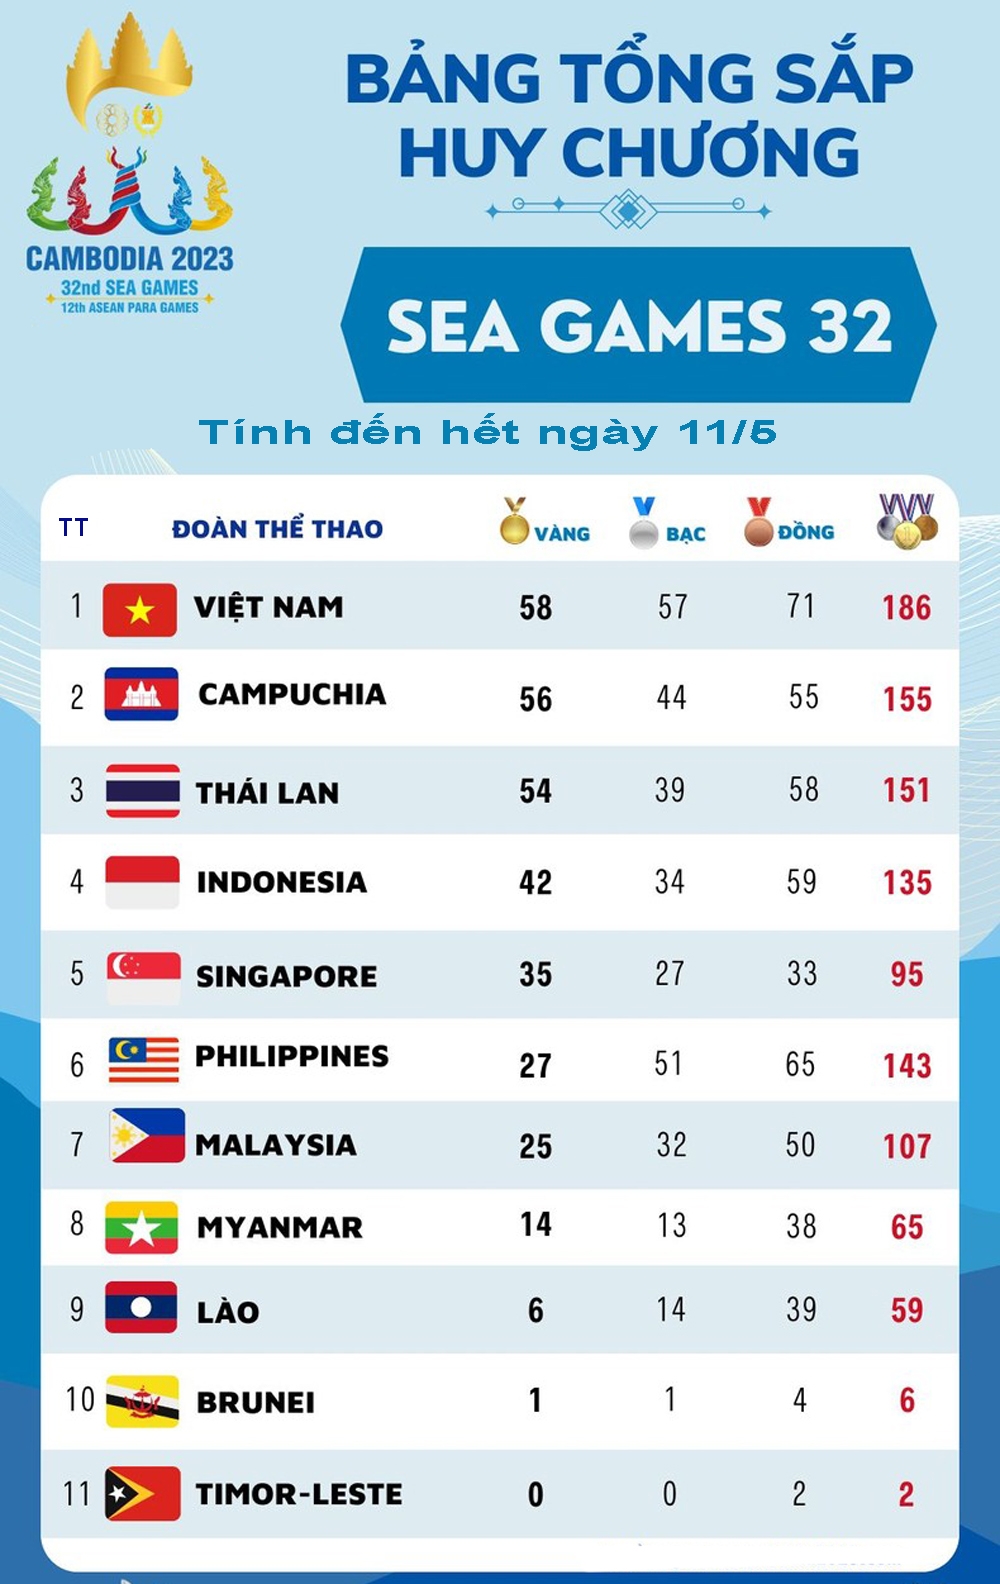 Bảng tổng sắp huy chương SEA Games 32 đến hết ngày 11/5. 